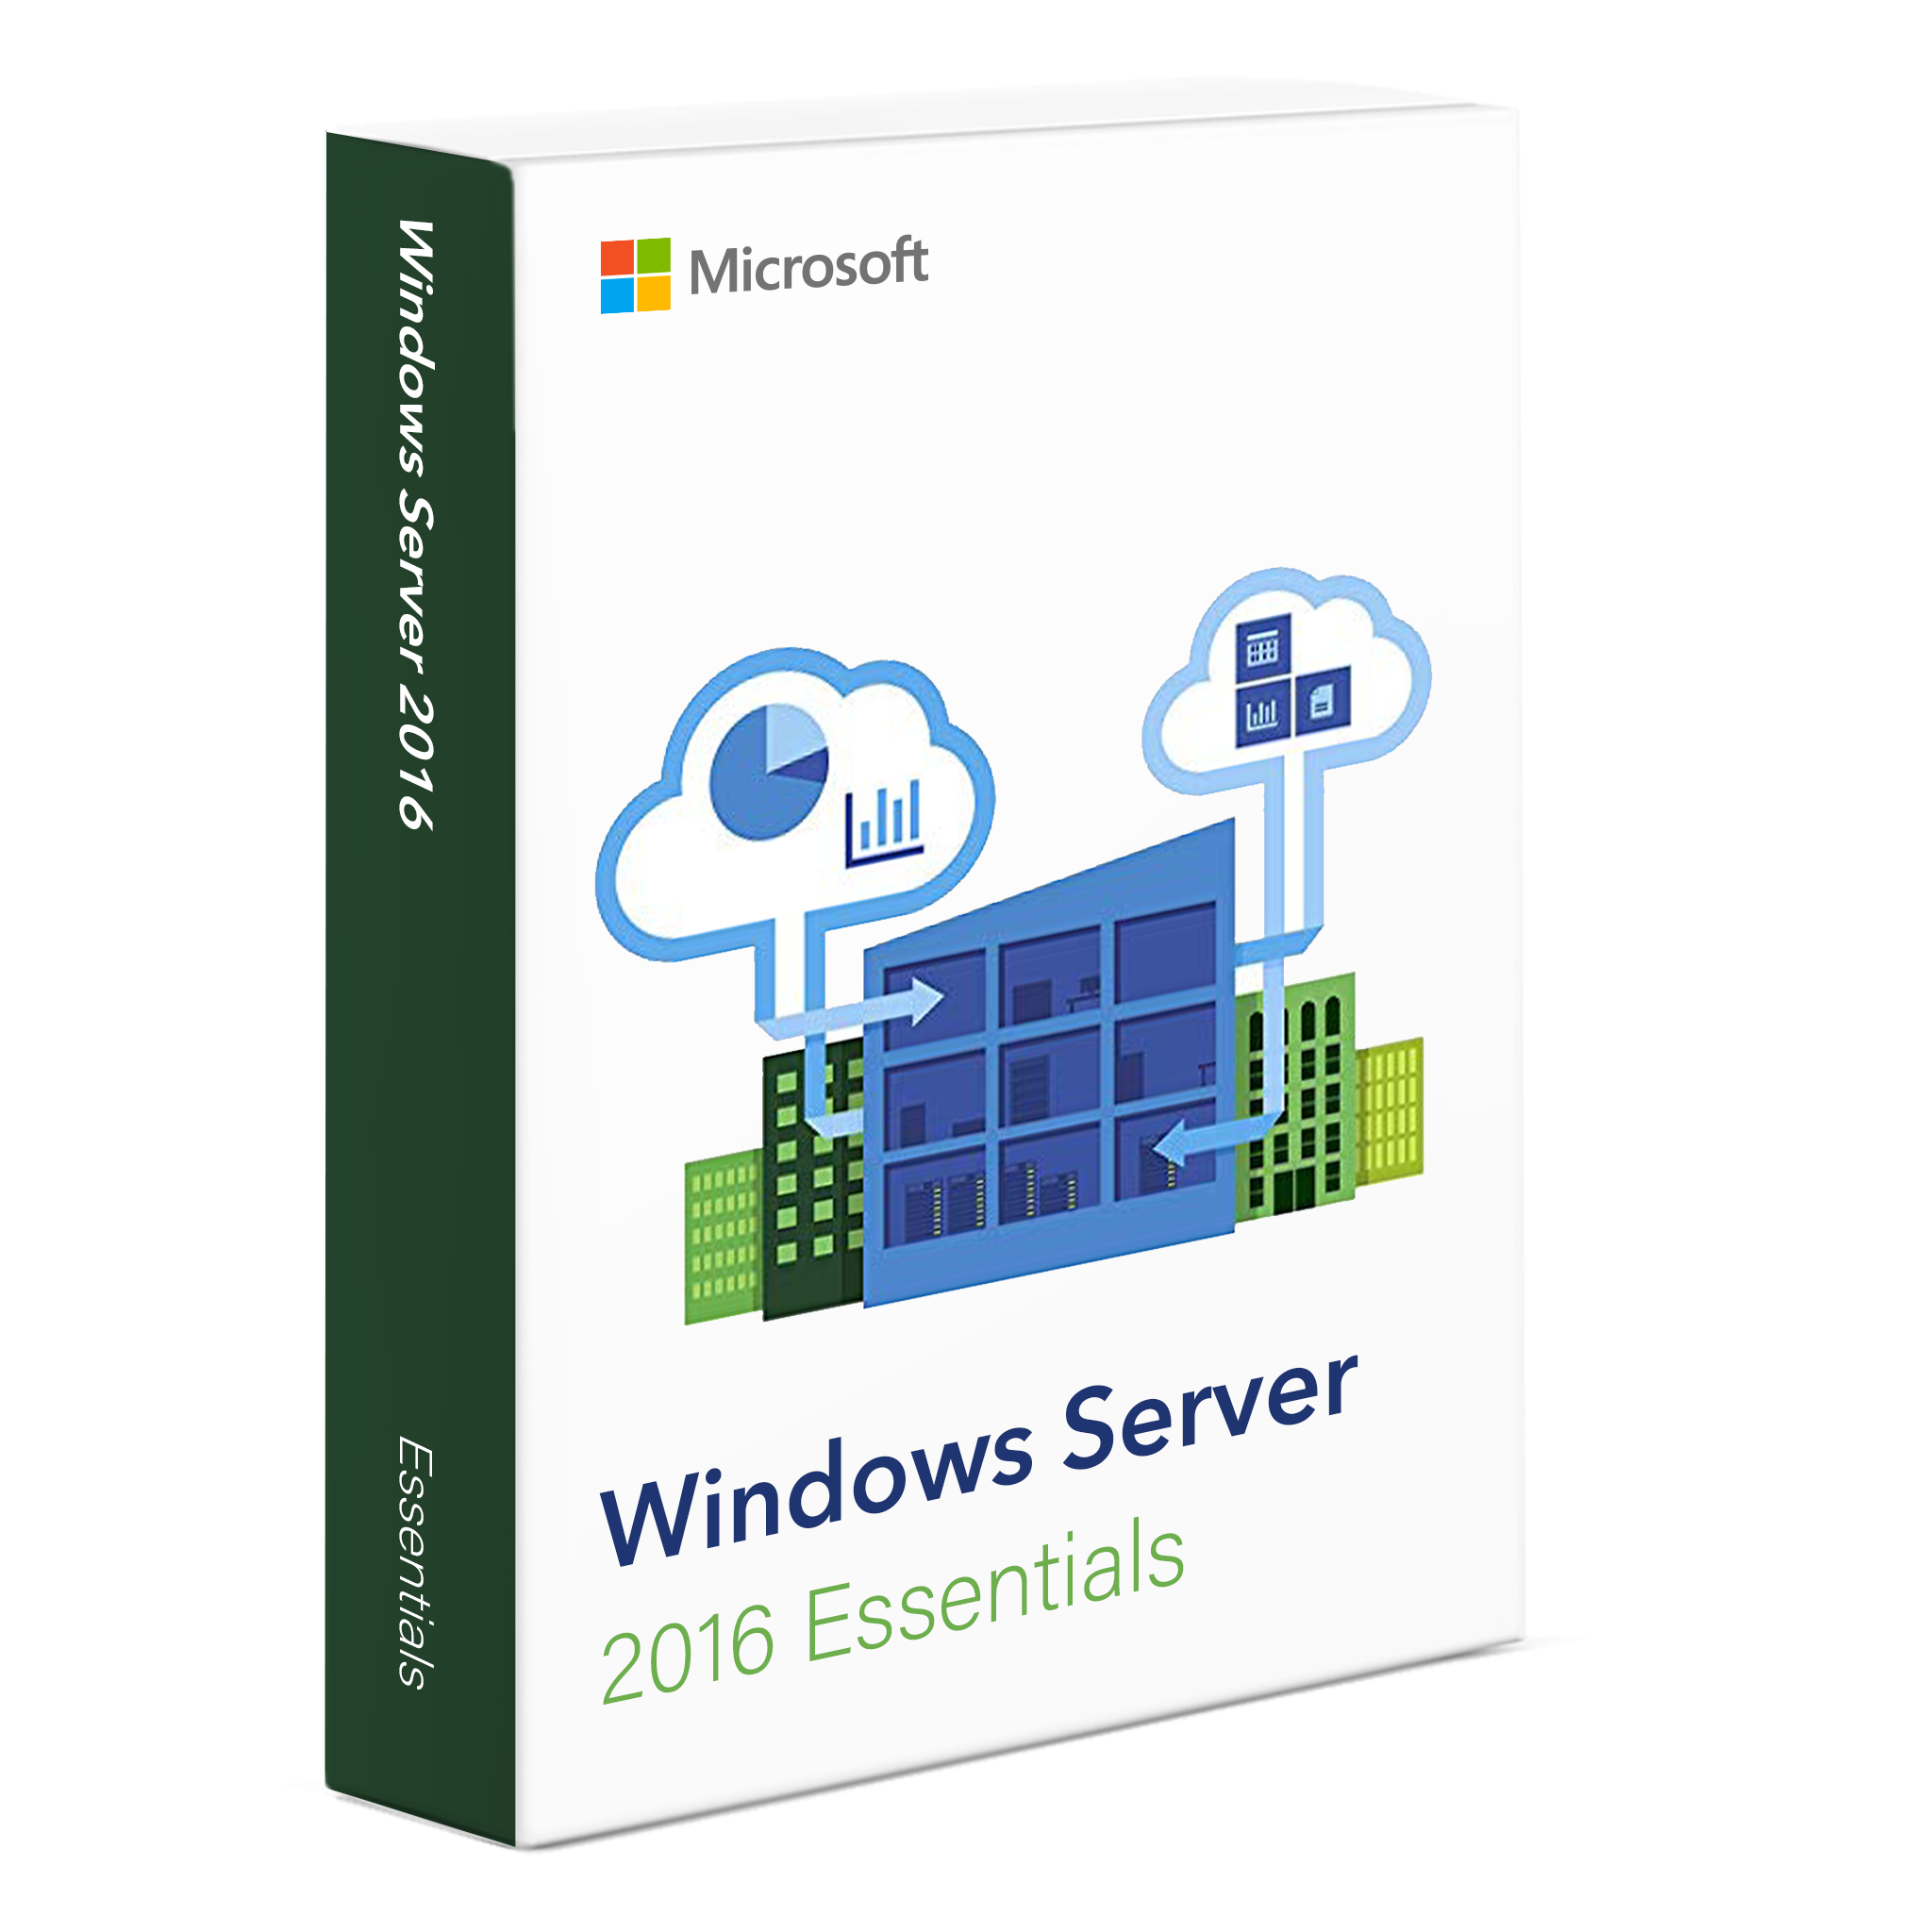 Conceptos básicos de Windows Server 2016